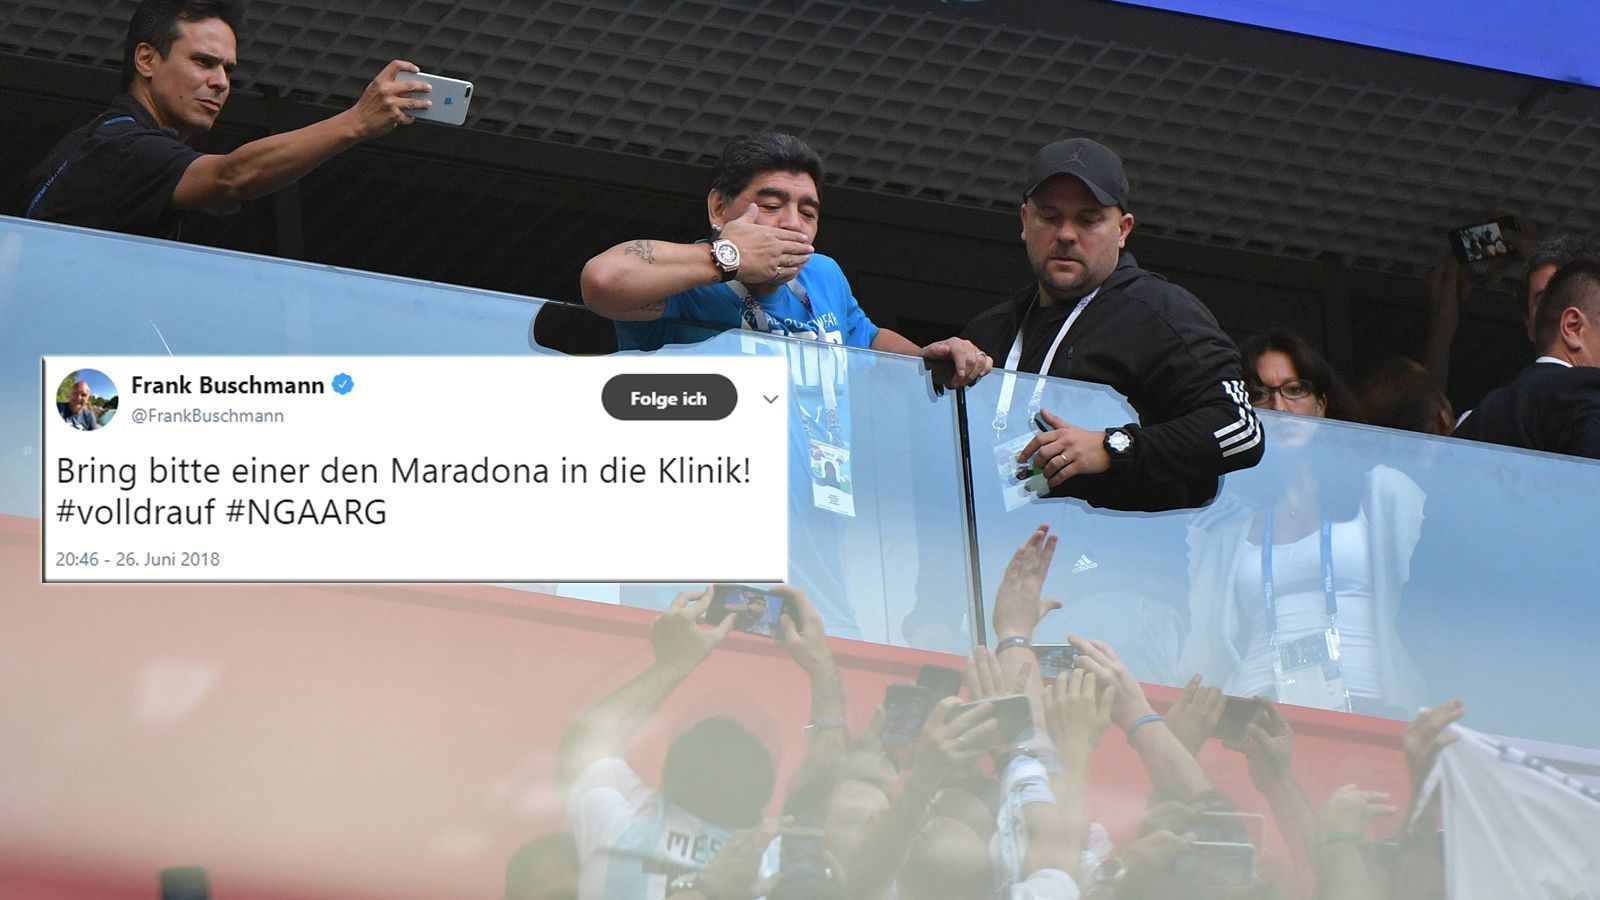 
                <strong>Maradona geht auf der Tribüne steil</strong><br>
                Auch Frank Buschmann hat seine Meinung zu Diego! Und auch wir wünschen, dass Maradona das Spiel unfallfrei übersteht ...
              